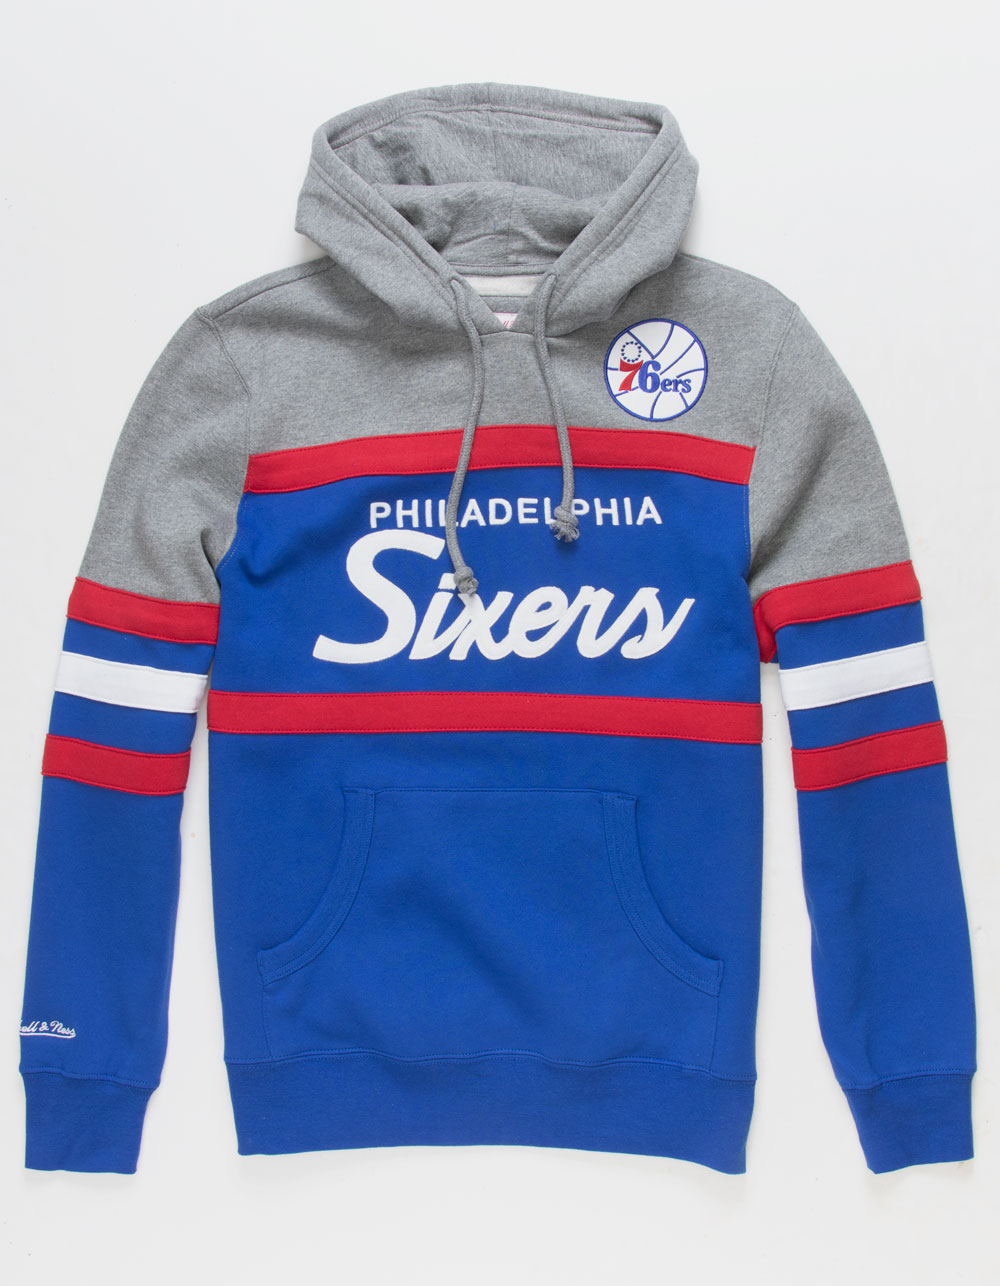 Wholesale Customized Sport Wear Men's Hoodies Philadelphia